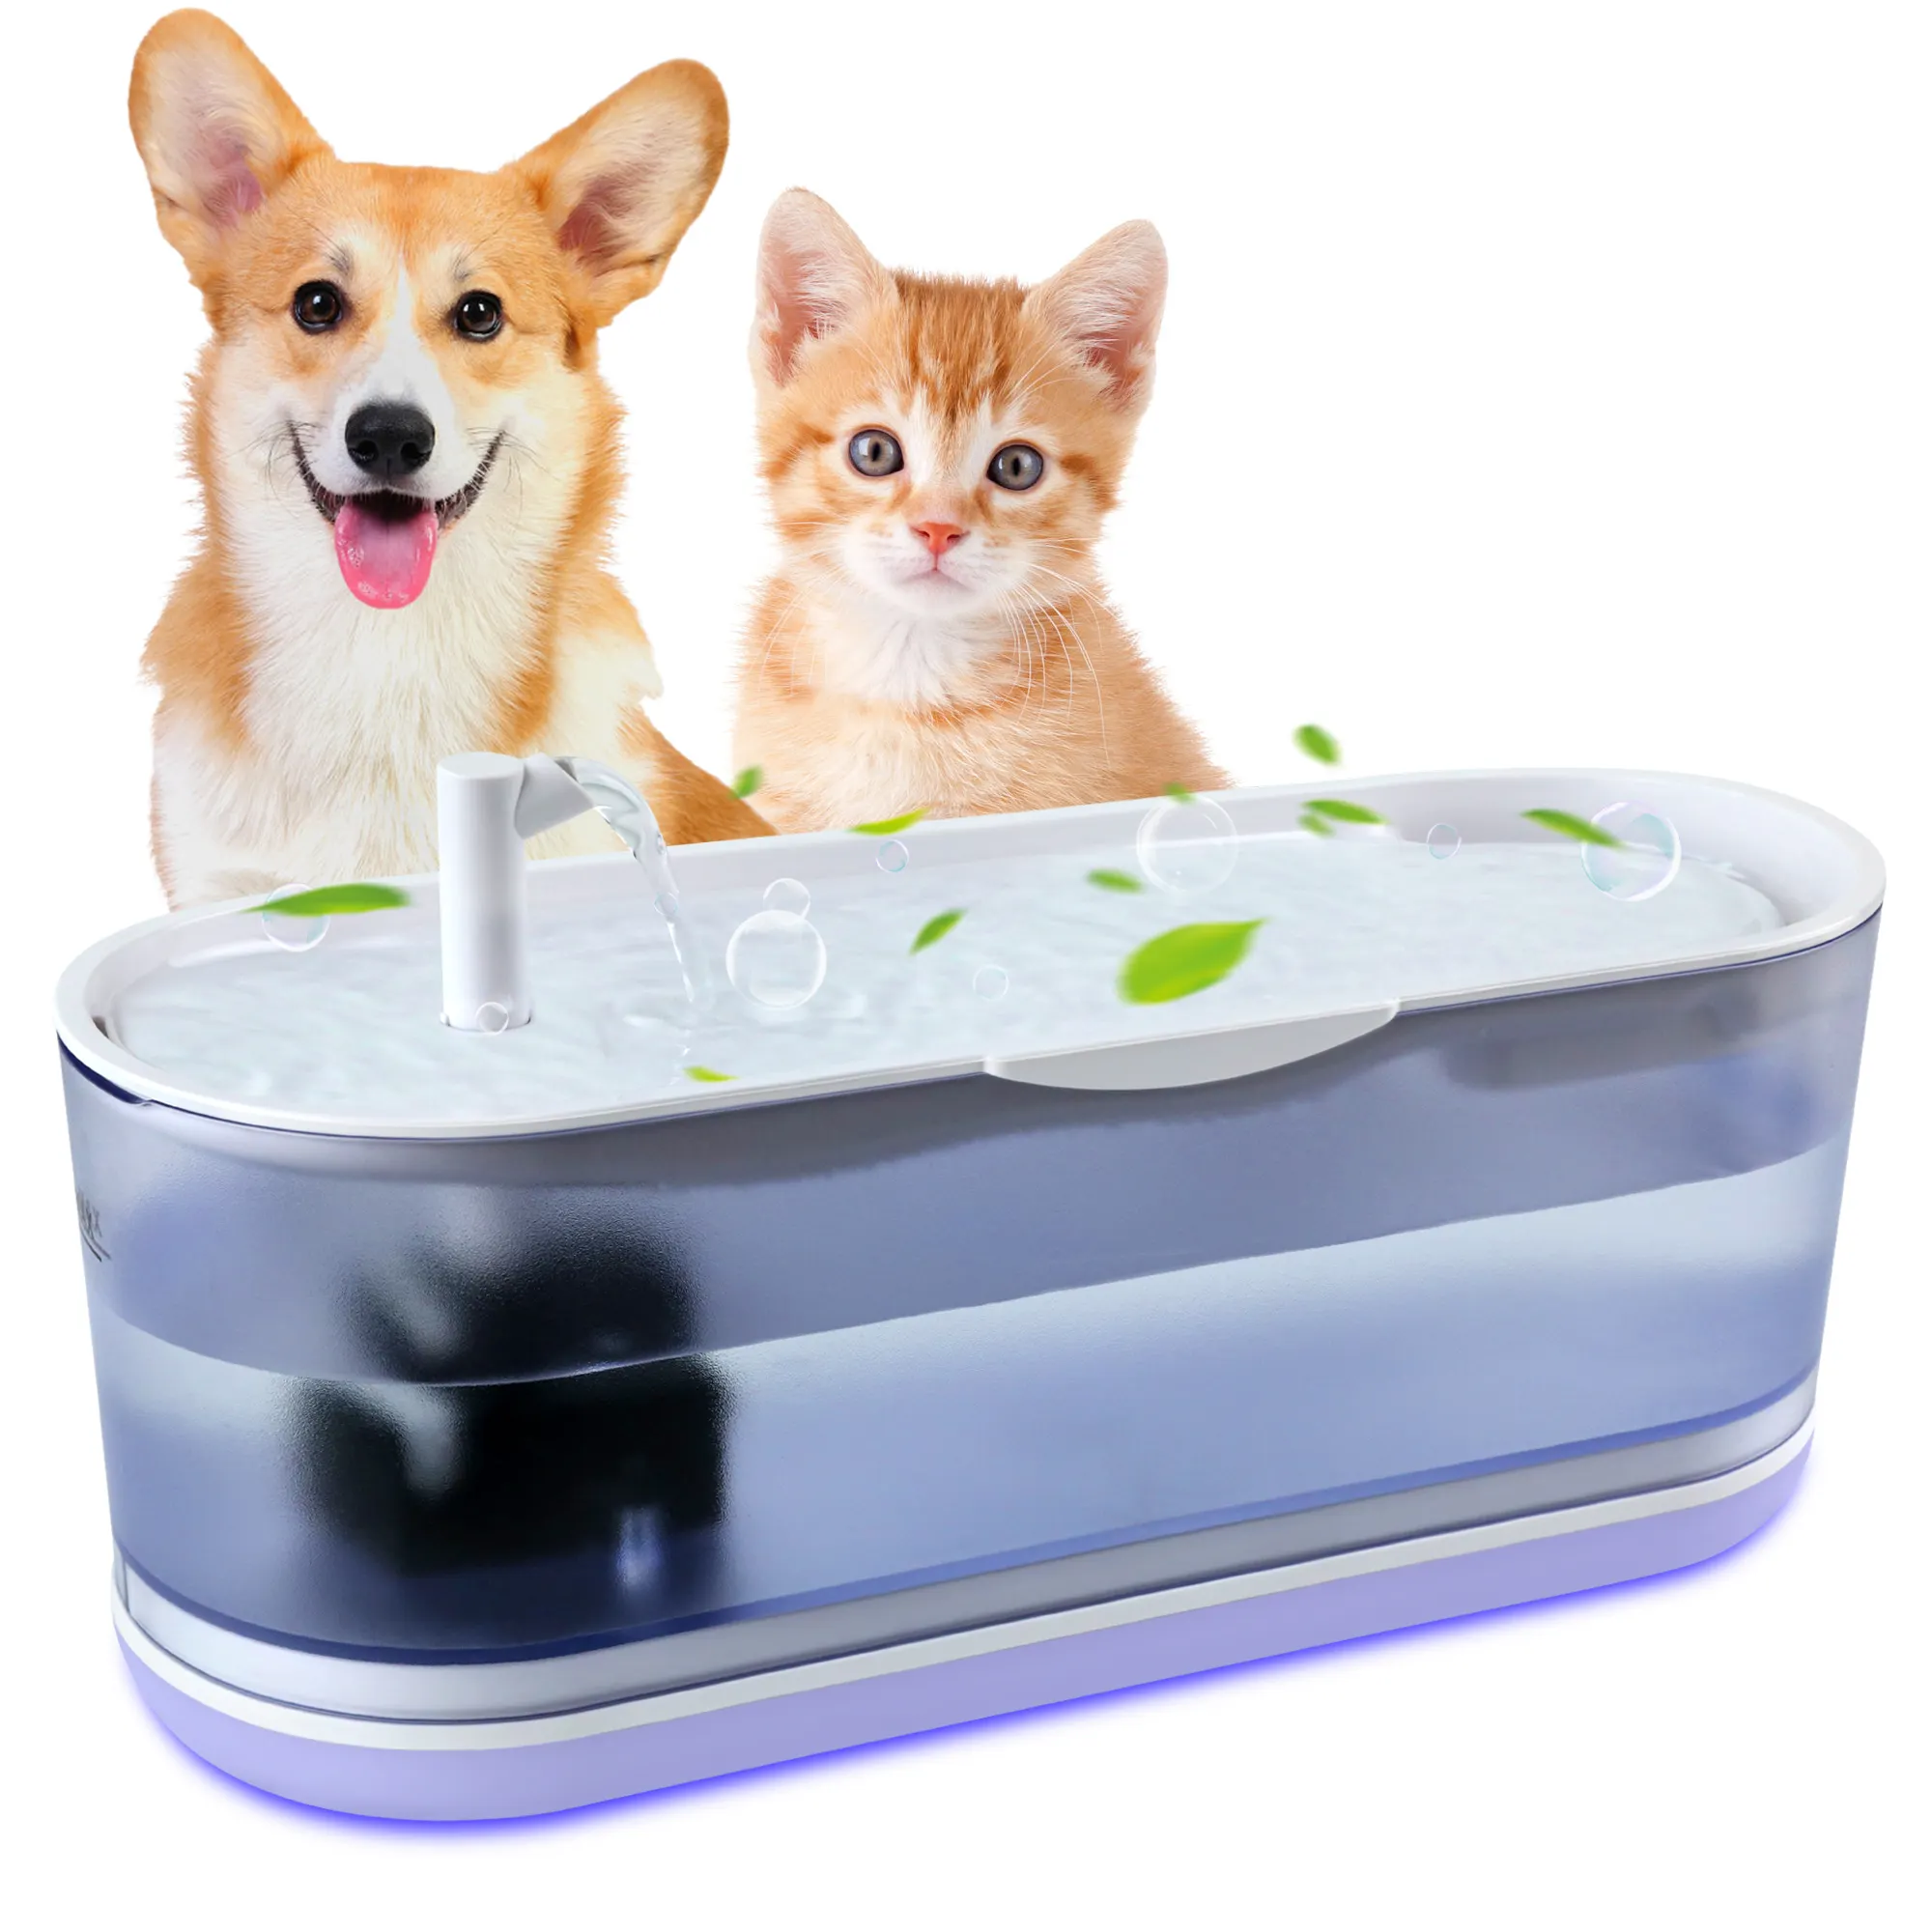 OEM ODM 2.3L Filtro automático Fuente de agua para gatos y perros Dispensador de bebidas 20dB Fuente de agua para mascotas